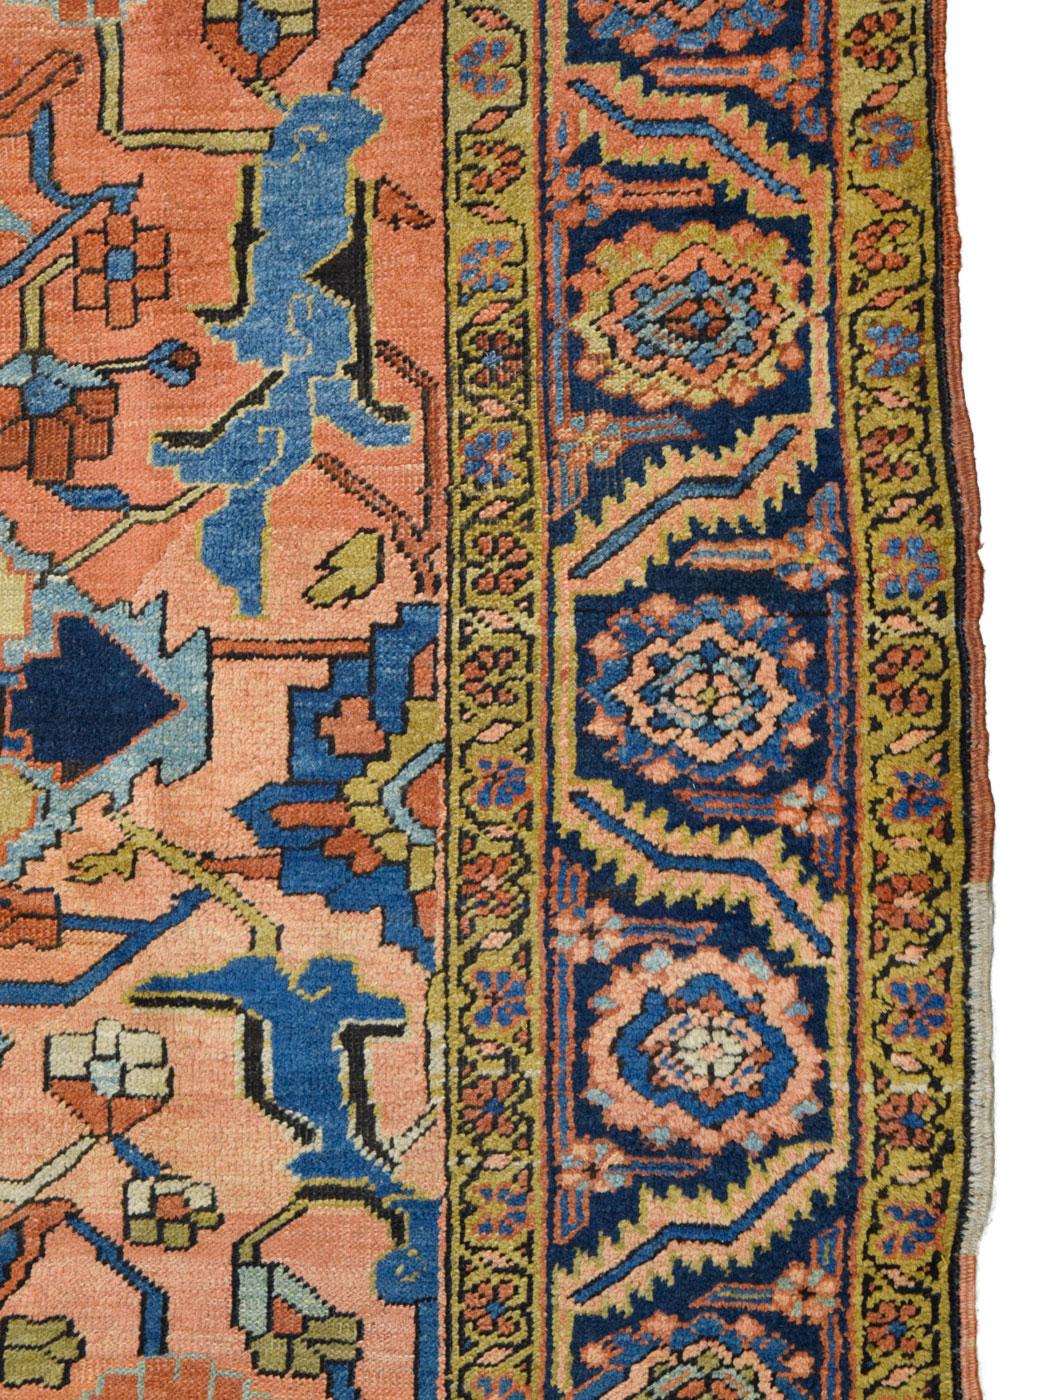 Tapis persan antique Heriz Serapi des années 1910 - 20,3 cm x 25,4 cm 1